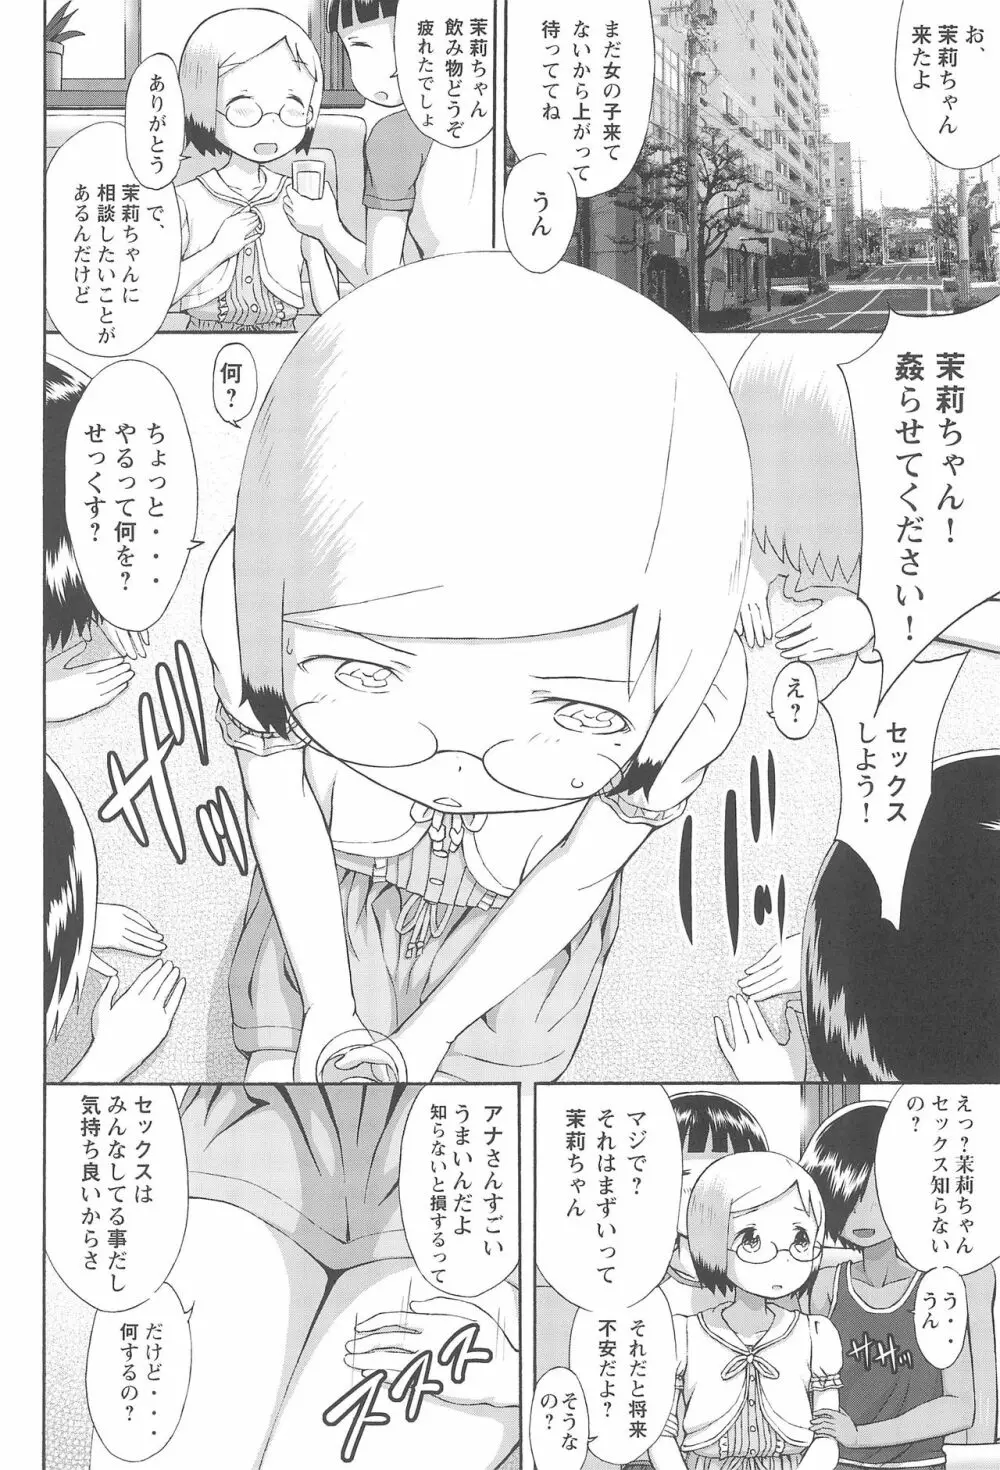 mashimaro ism 茉莉ちゃんと遊ぼう - page5